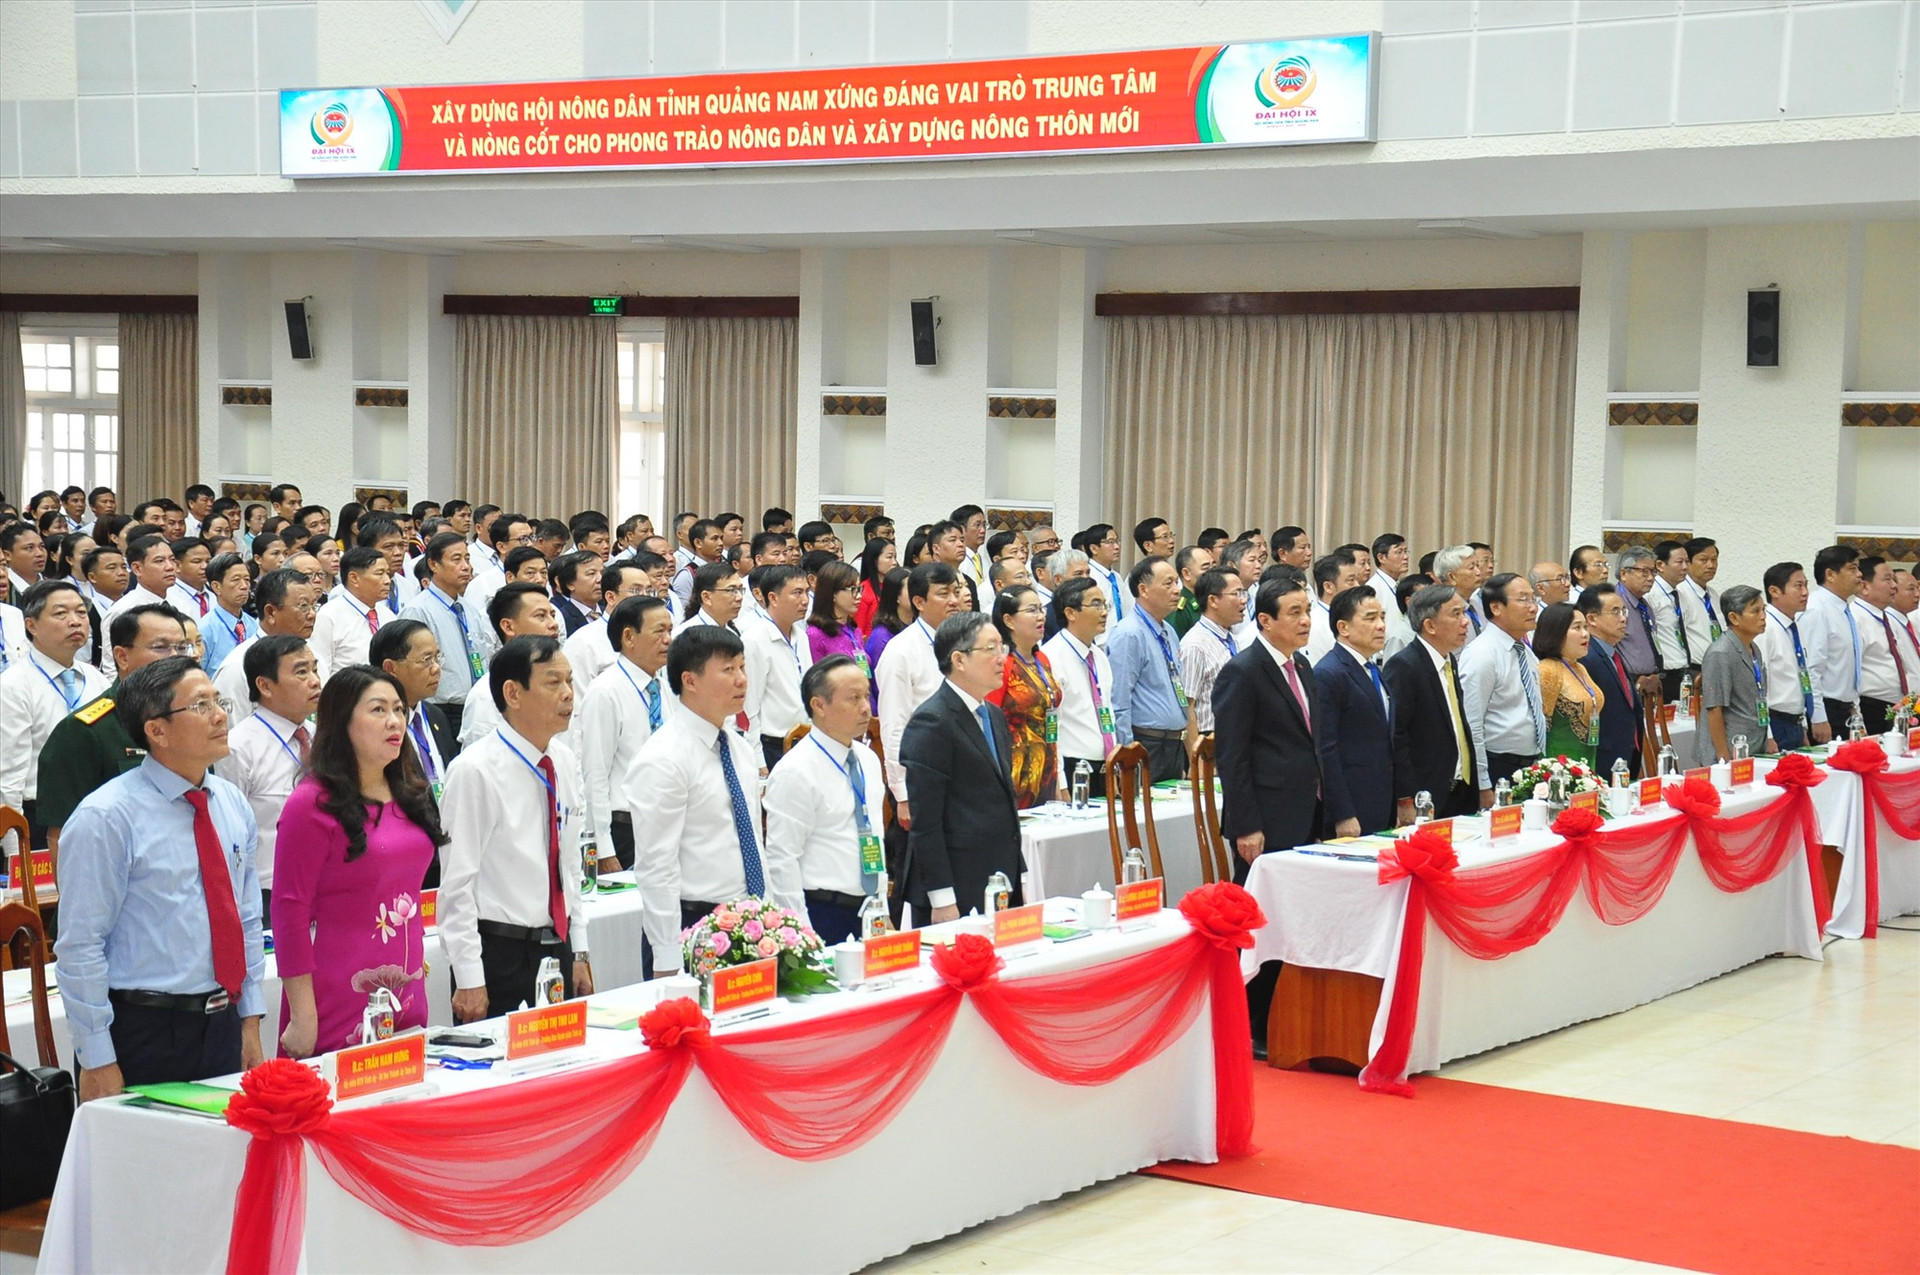 Các đồng chí lãnh đạo Trung ương Hội Nông dân Việt Nam và lãnh đạo tỉnh, đại biểu làm lễ chào cờ. Ảnh: S.A